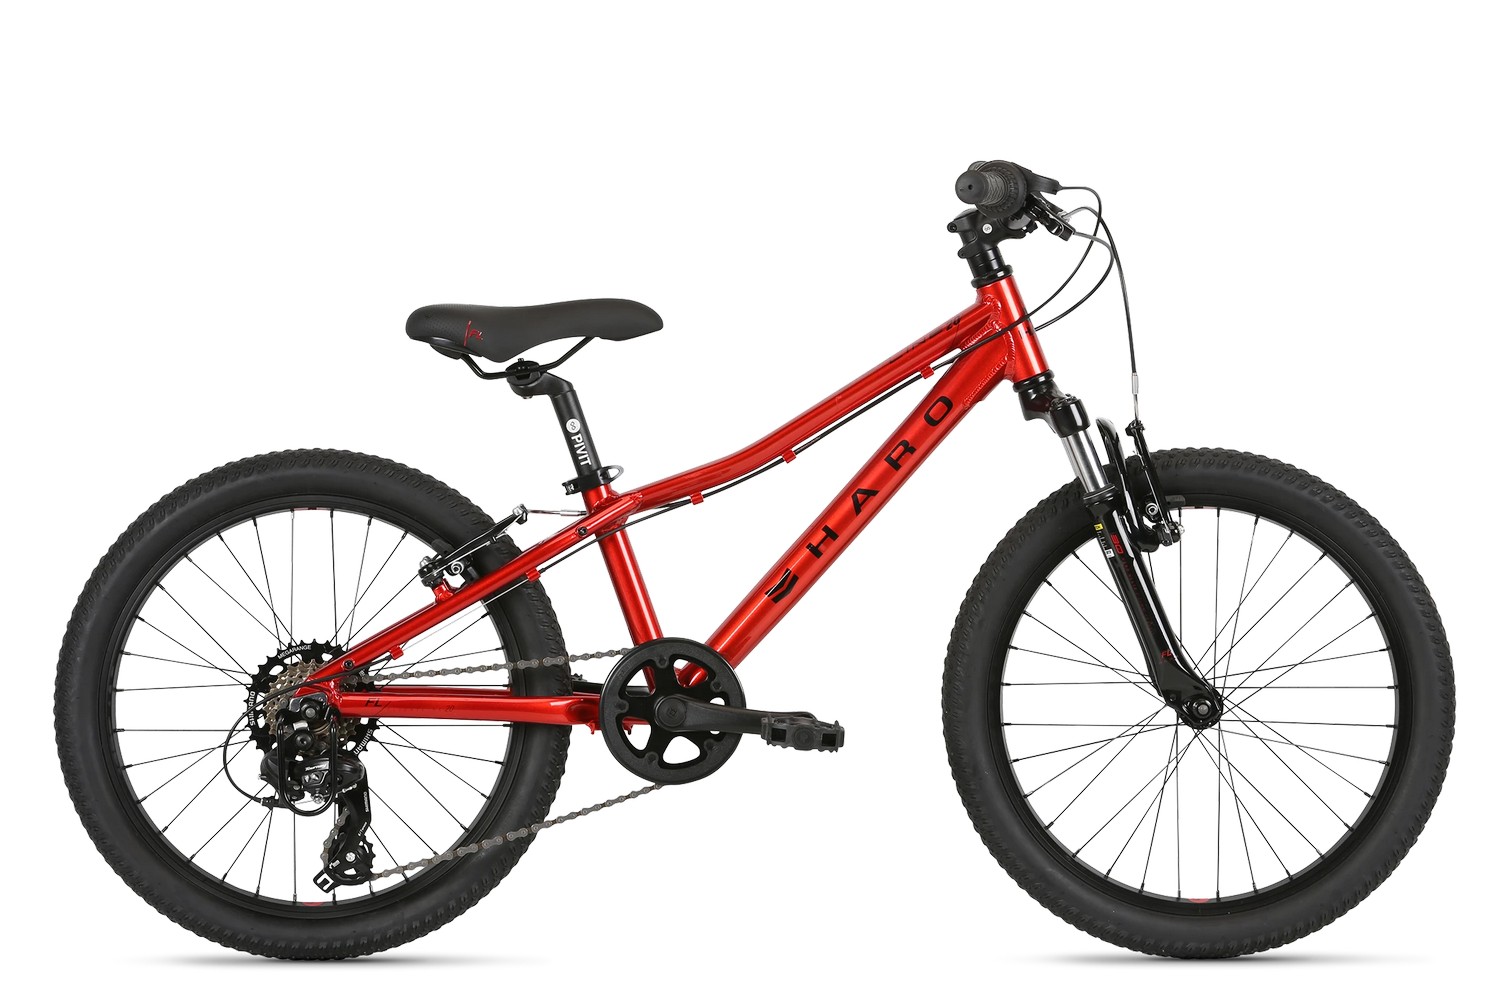 Детский велосипед Haro Flightline 20, год 2021, цвет Красный-Черный